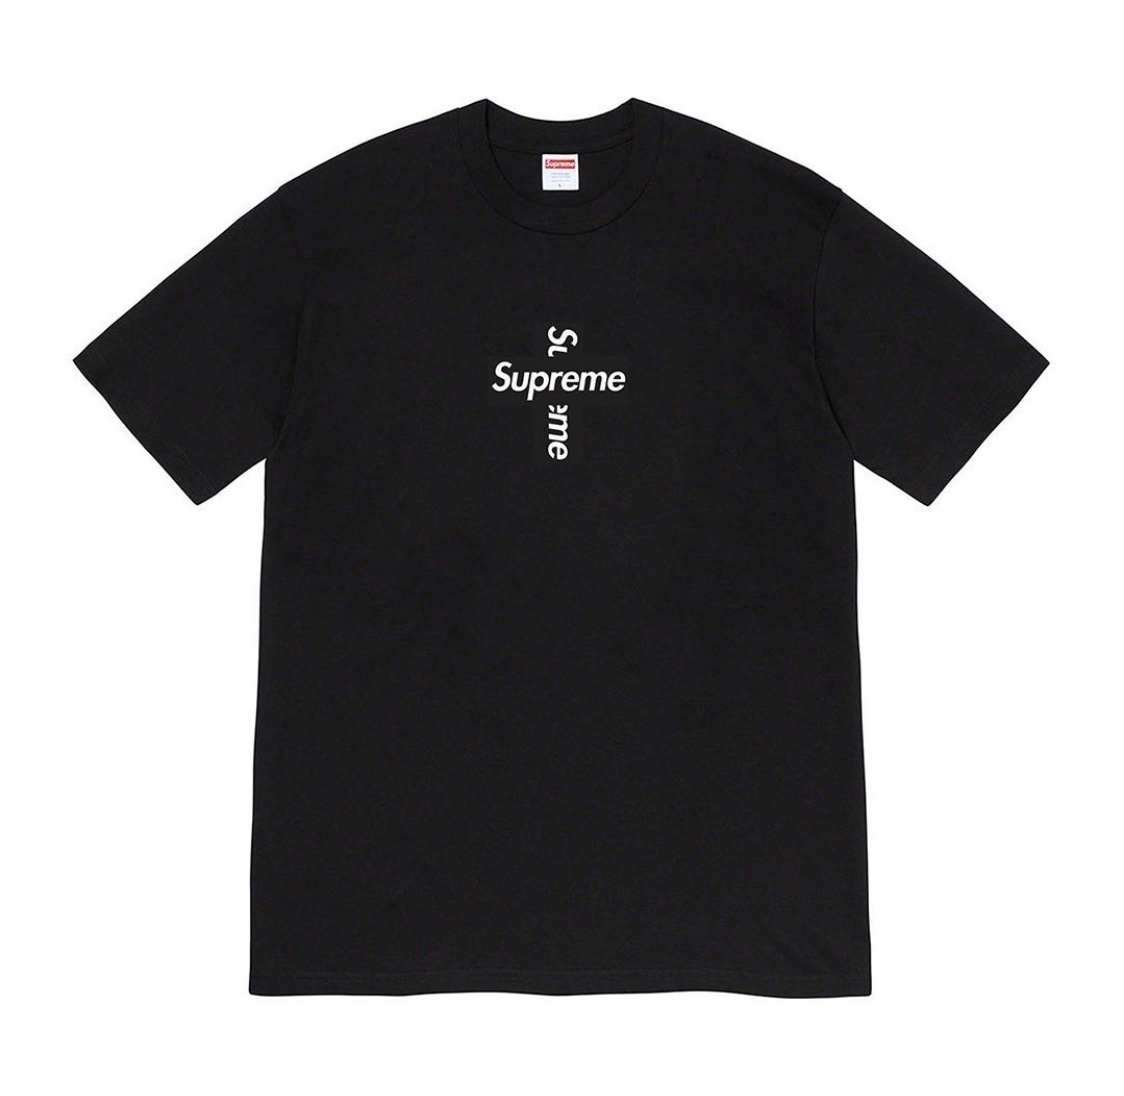 Supreme Cross Box Logo: Anche T-shirts oltre a Hoodies in arrivo per la